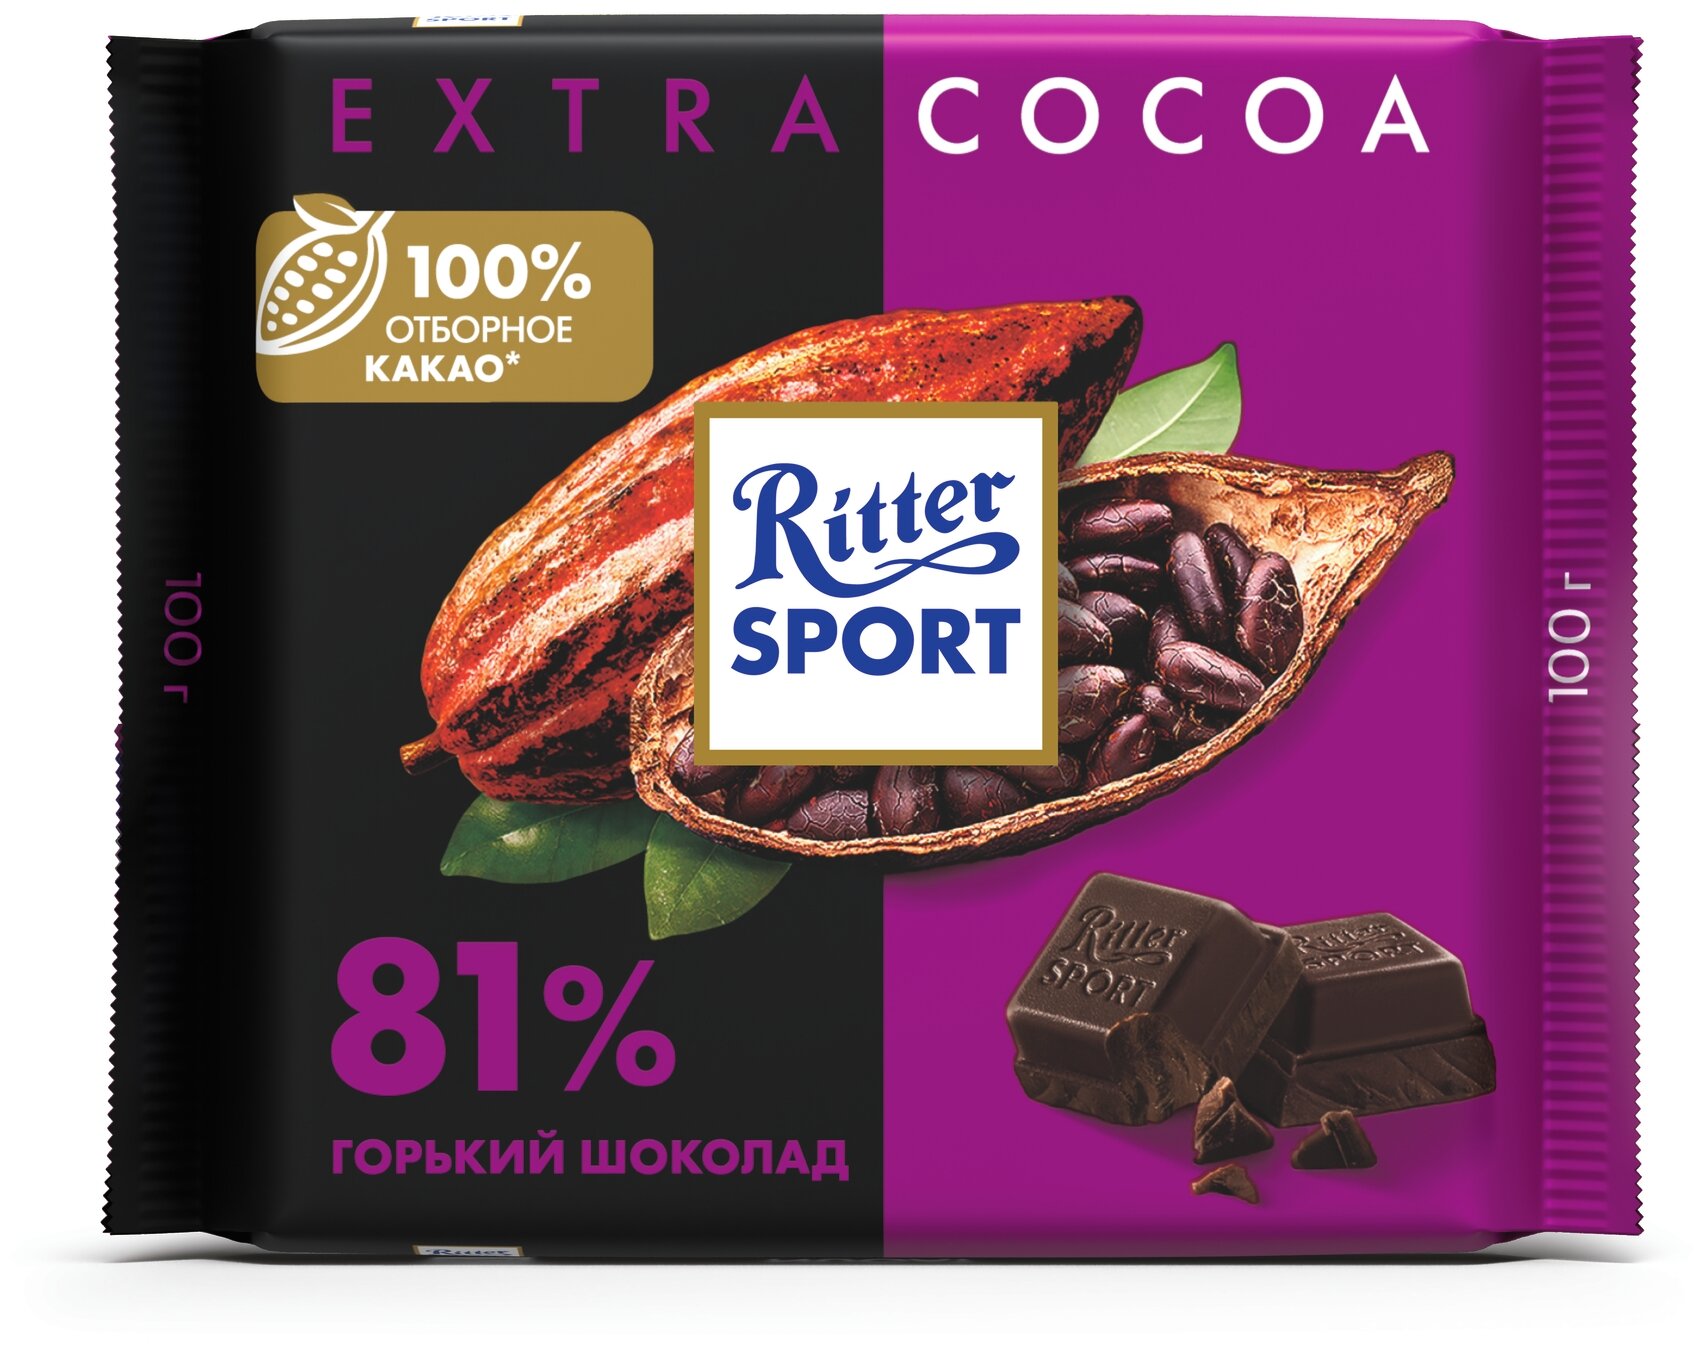 Шоколад Ritter Sport Extra cocoa горький 81% какао